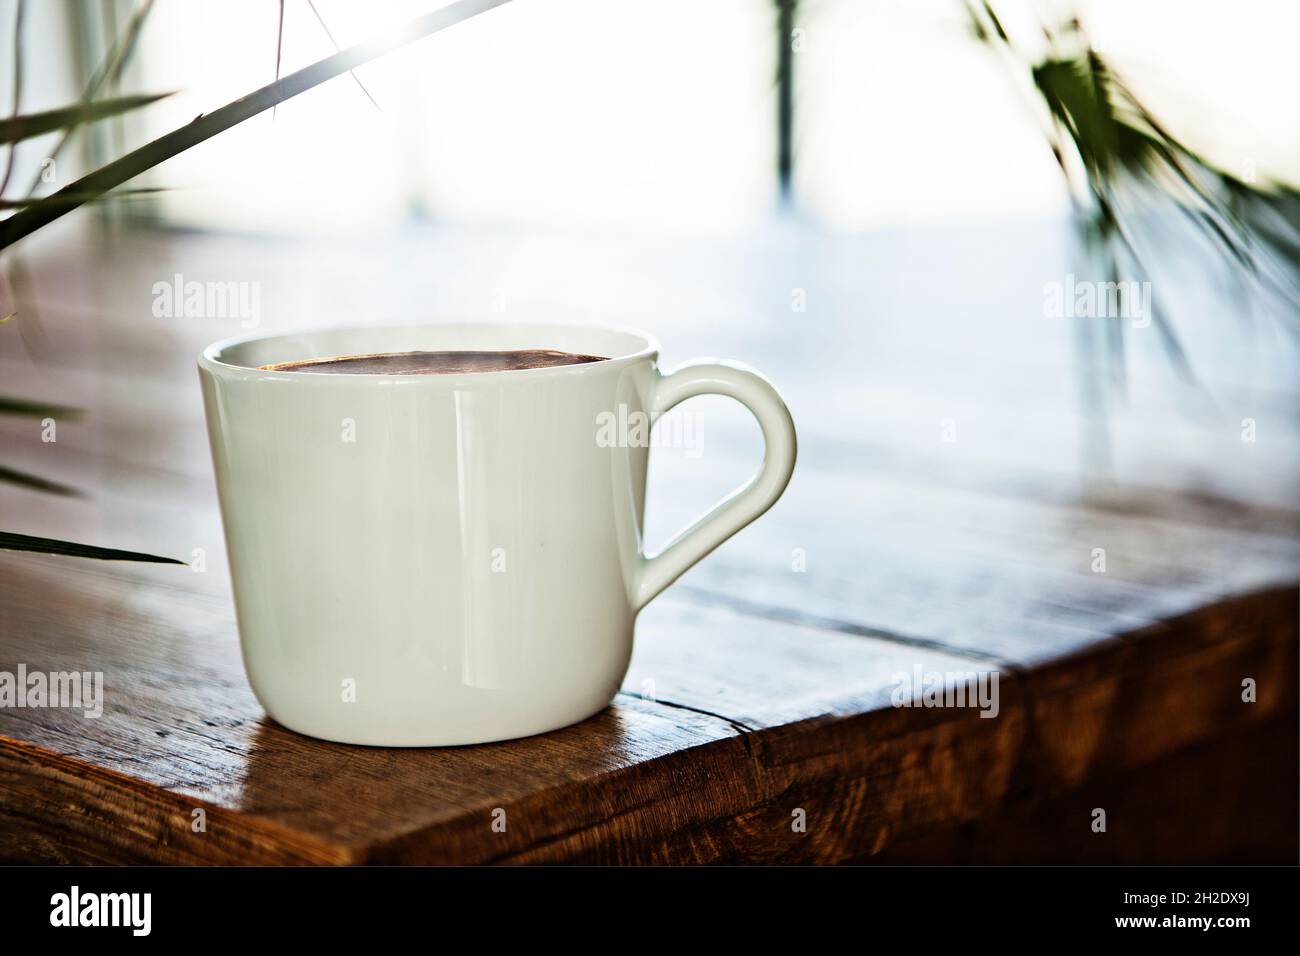 Tasse à café en céramique/porcelaine blanche sur table en bois, rétroéclairée avec le soleil derrière Banque D'Images